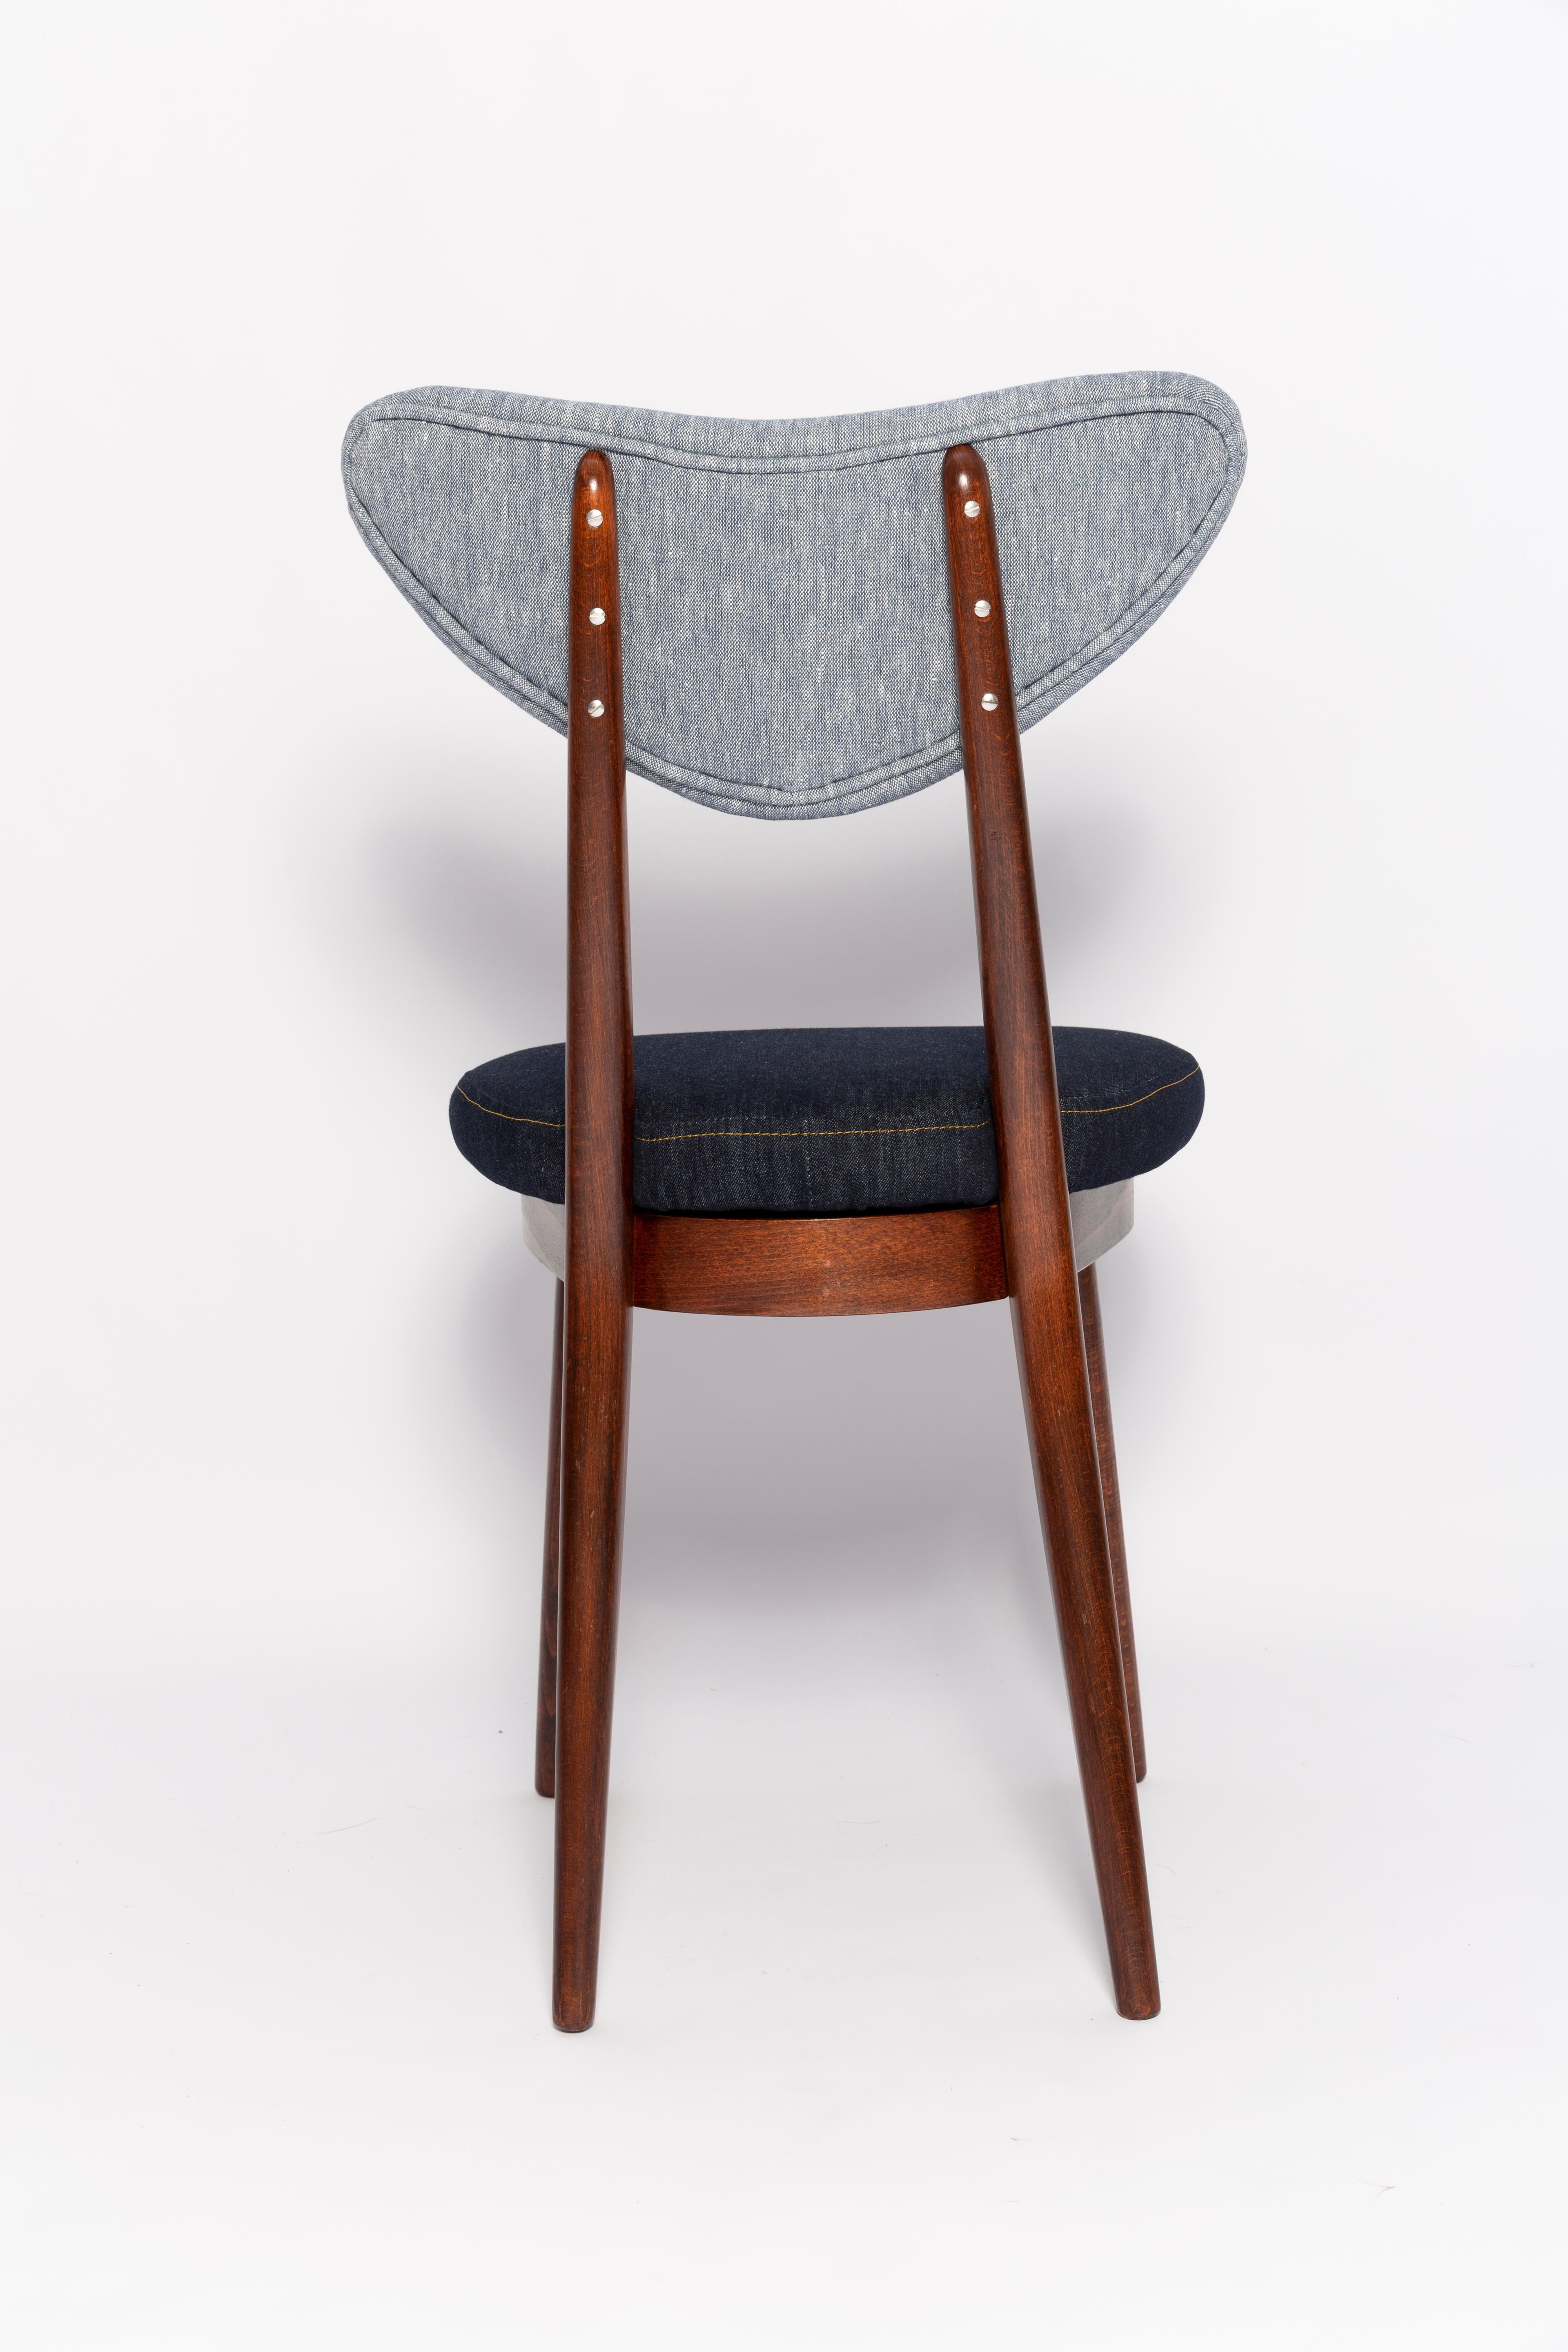 Velvet Midcentury Light and Dark Blue Denim Heart Chair, Europe, 1960s For Sale